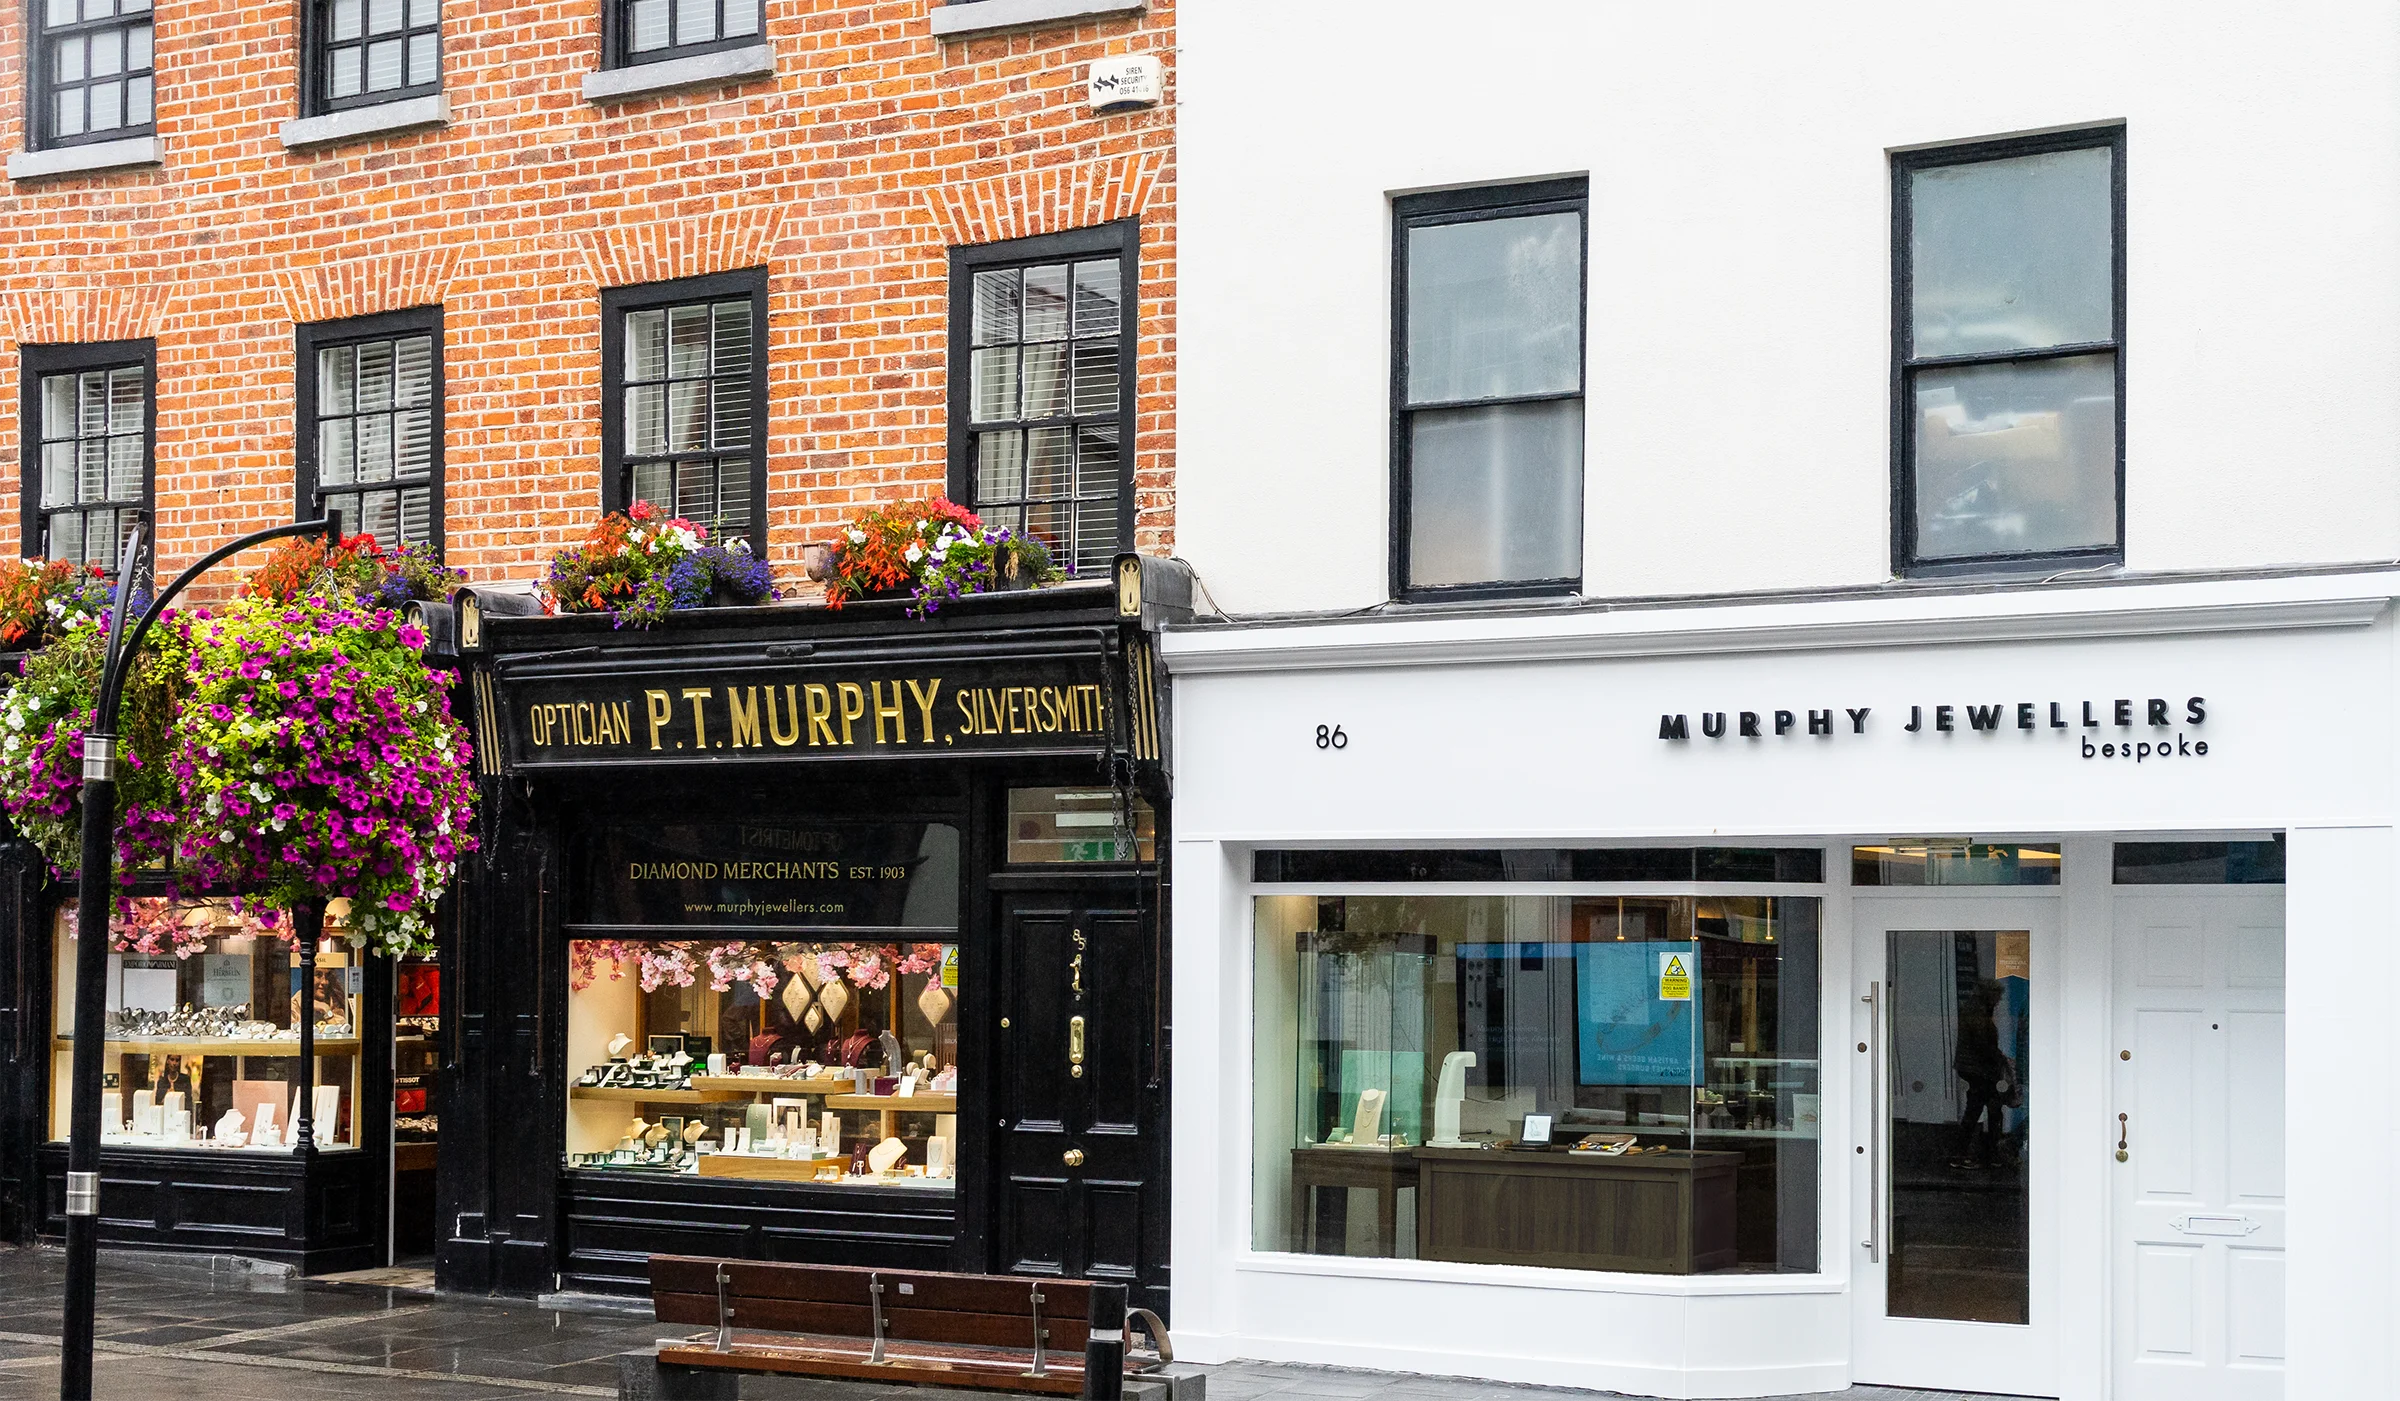 Visit Murphy Jewellers of Kilkenny | Murphy Jewellers Bespoke